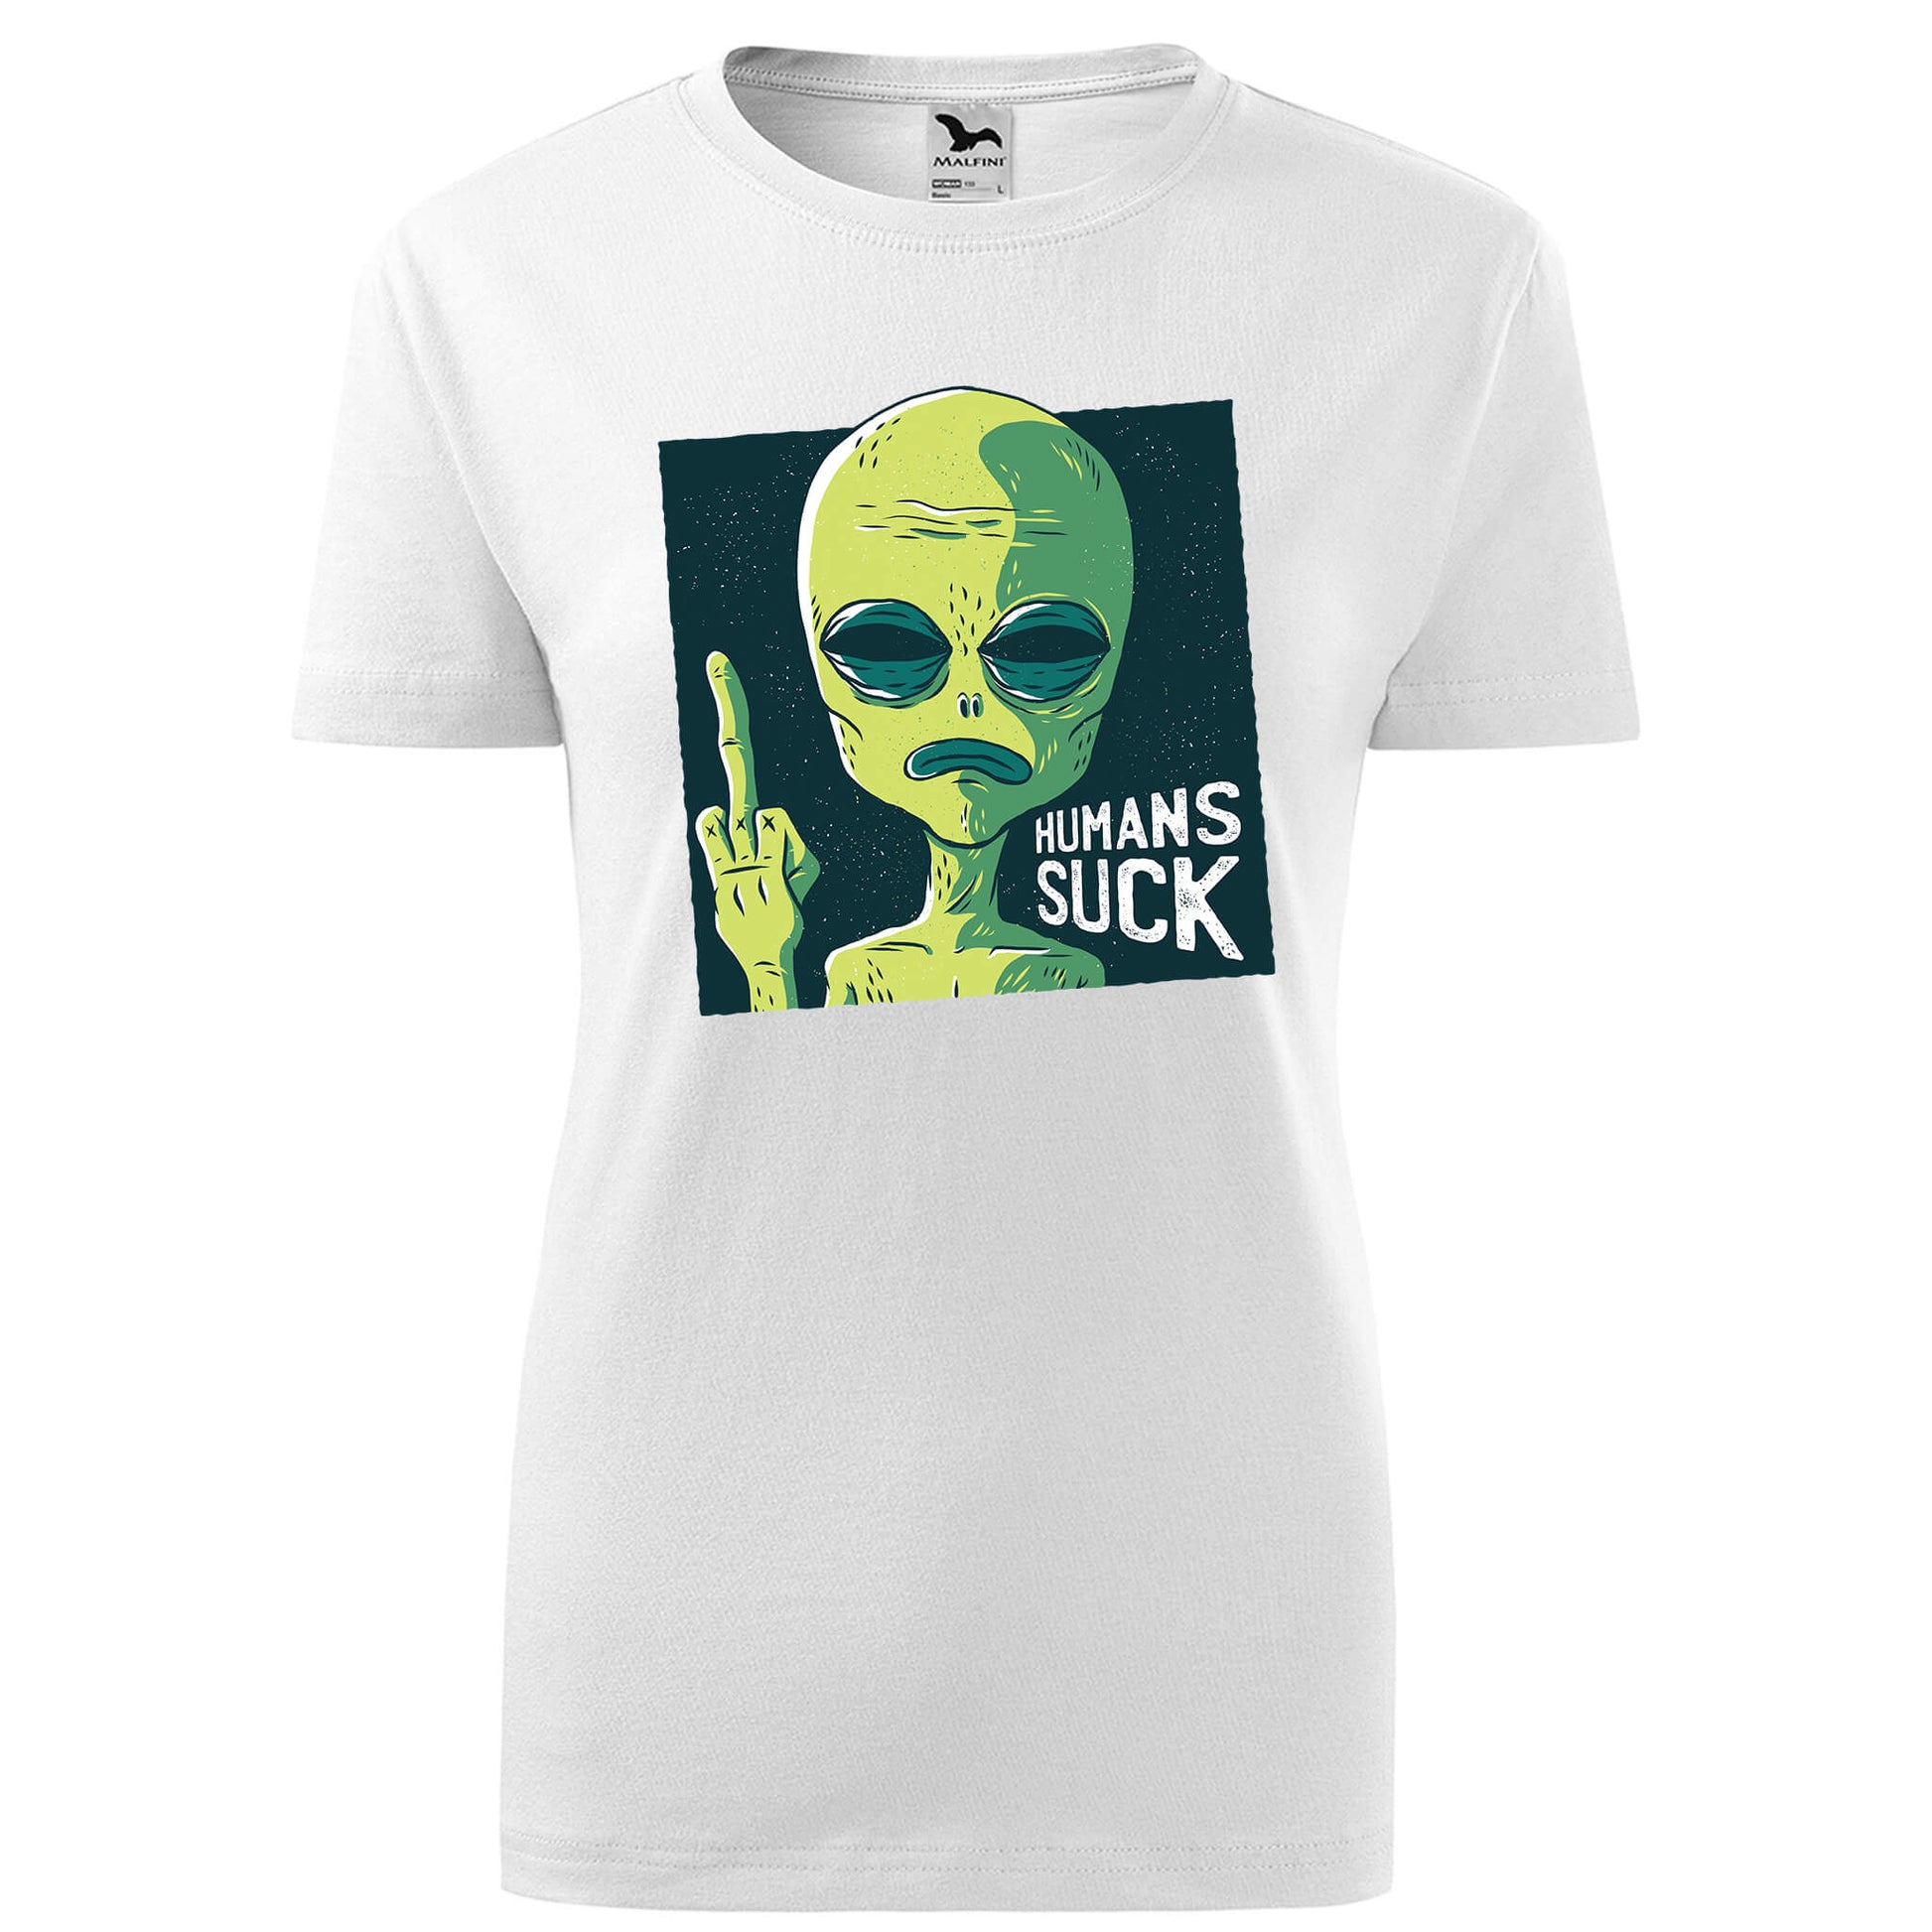 Humans suck alien t-shirt - rvdesignprint